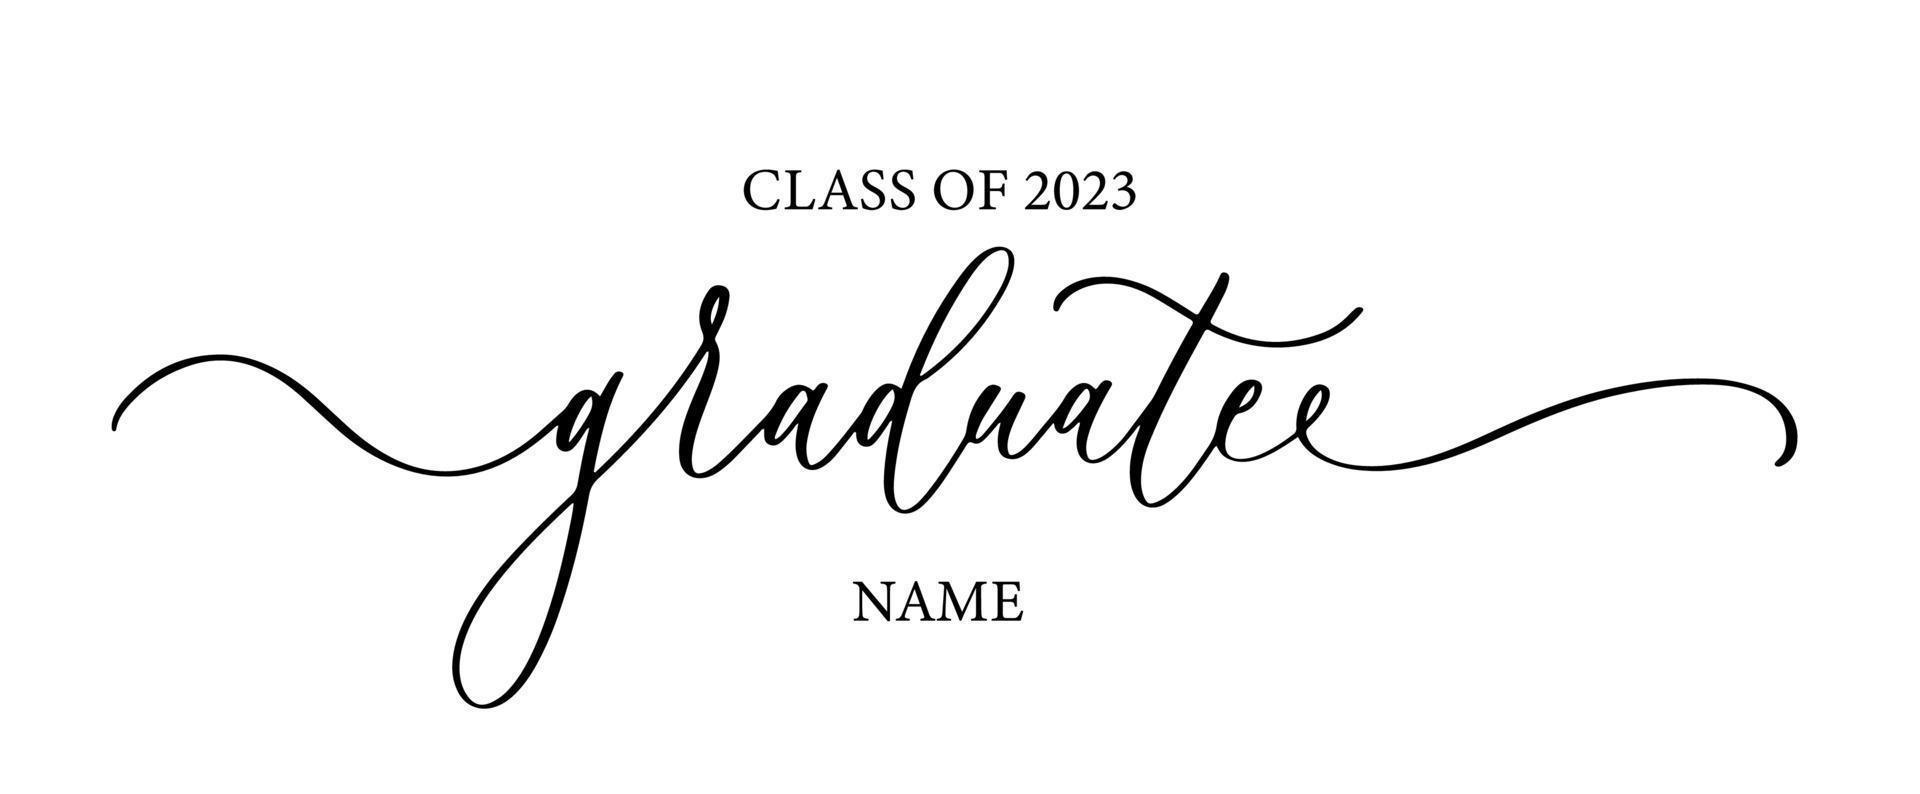 diplômé de la promotion 2023. inscription de lettrage de calligraphie à la mode. vecteur